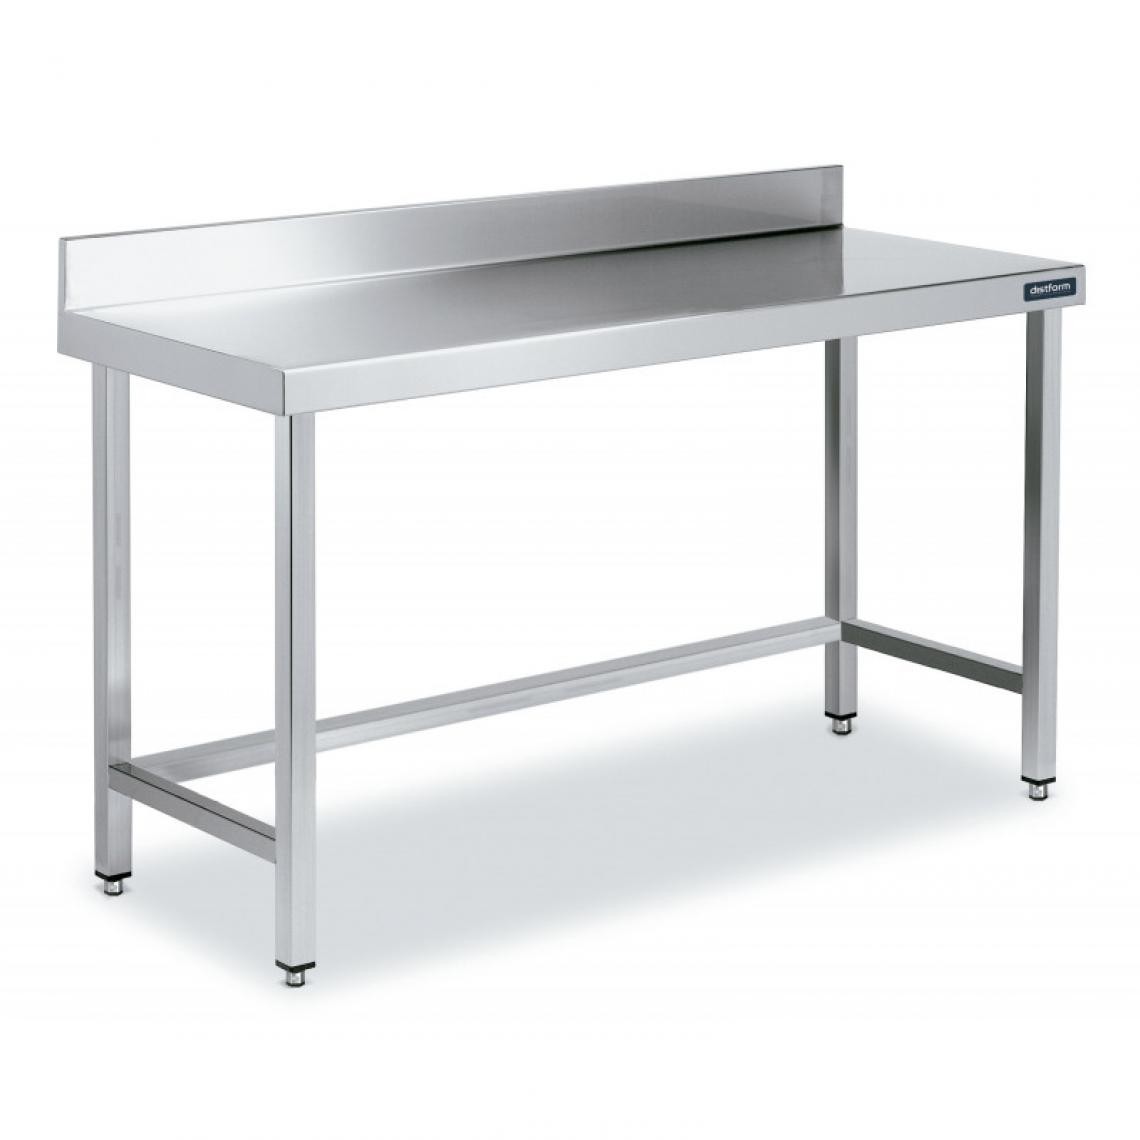 DISTFORM - Table Adossée en Inox avec Renforts Profondeur 700 mm - Distform - Acier inoxydable600x700 - Tables à manger